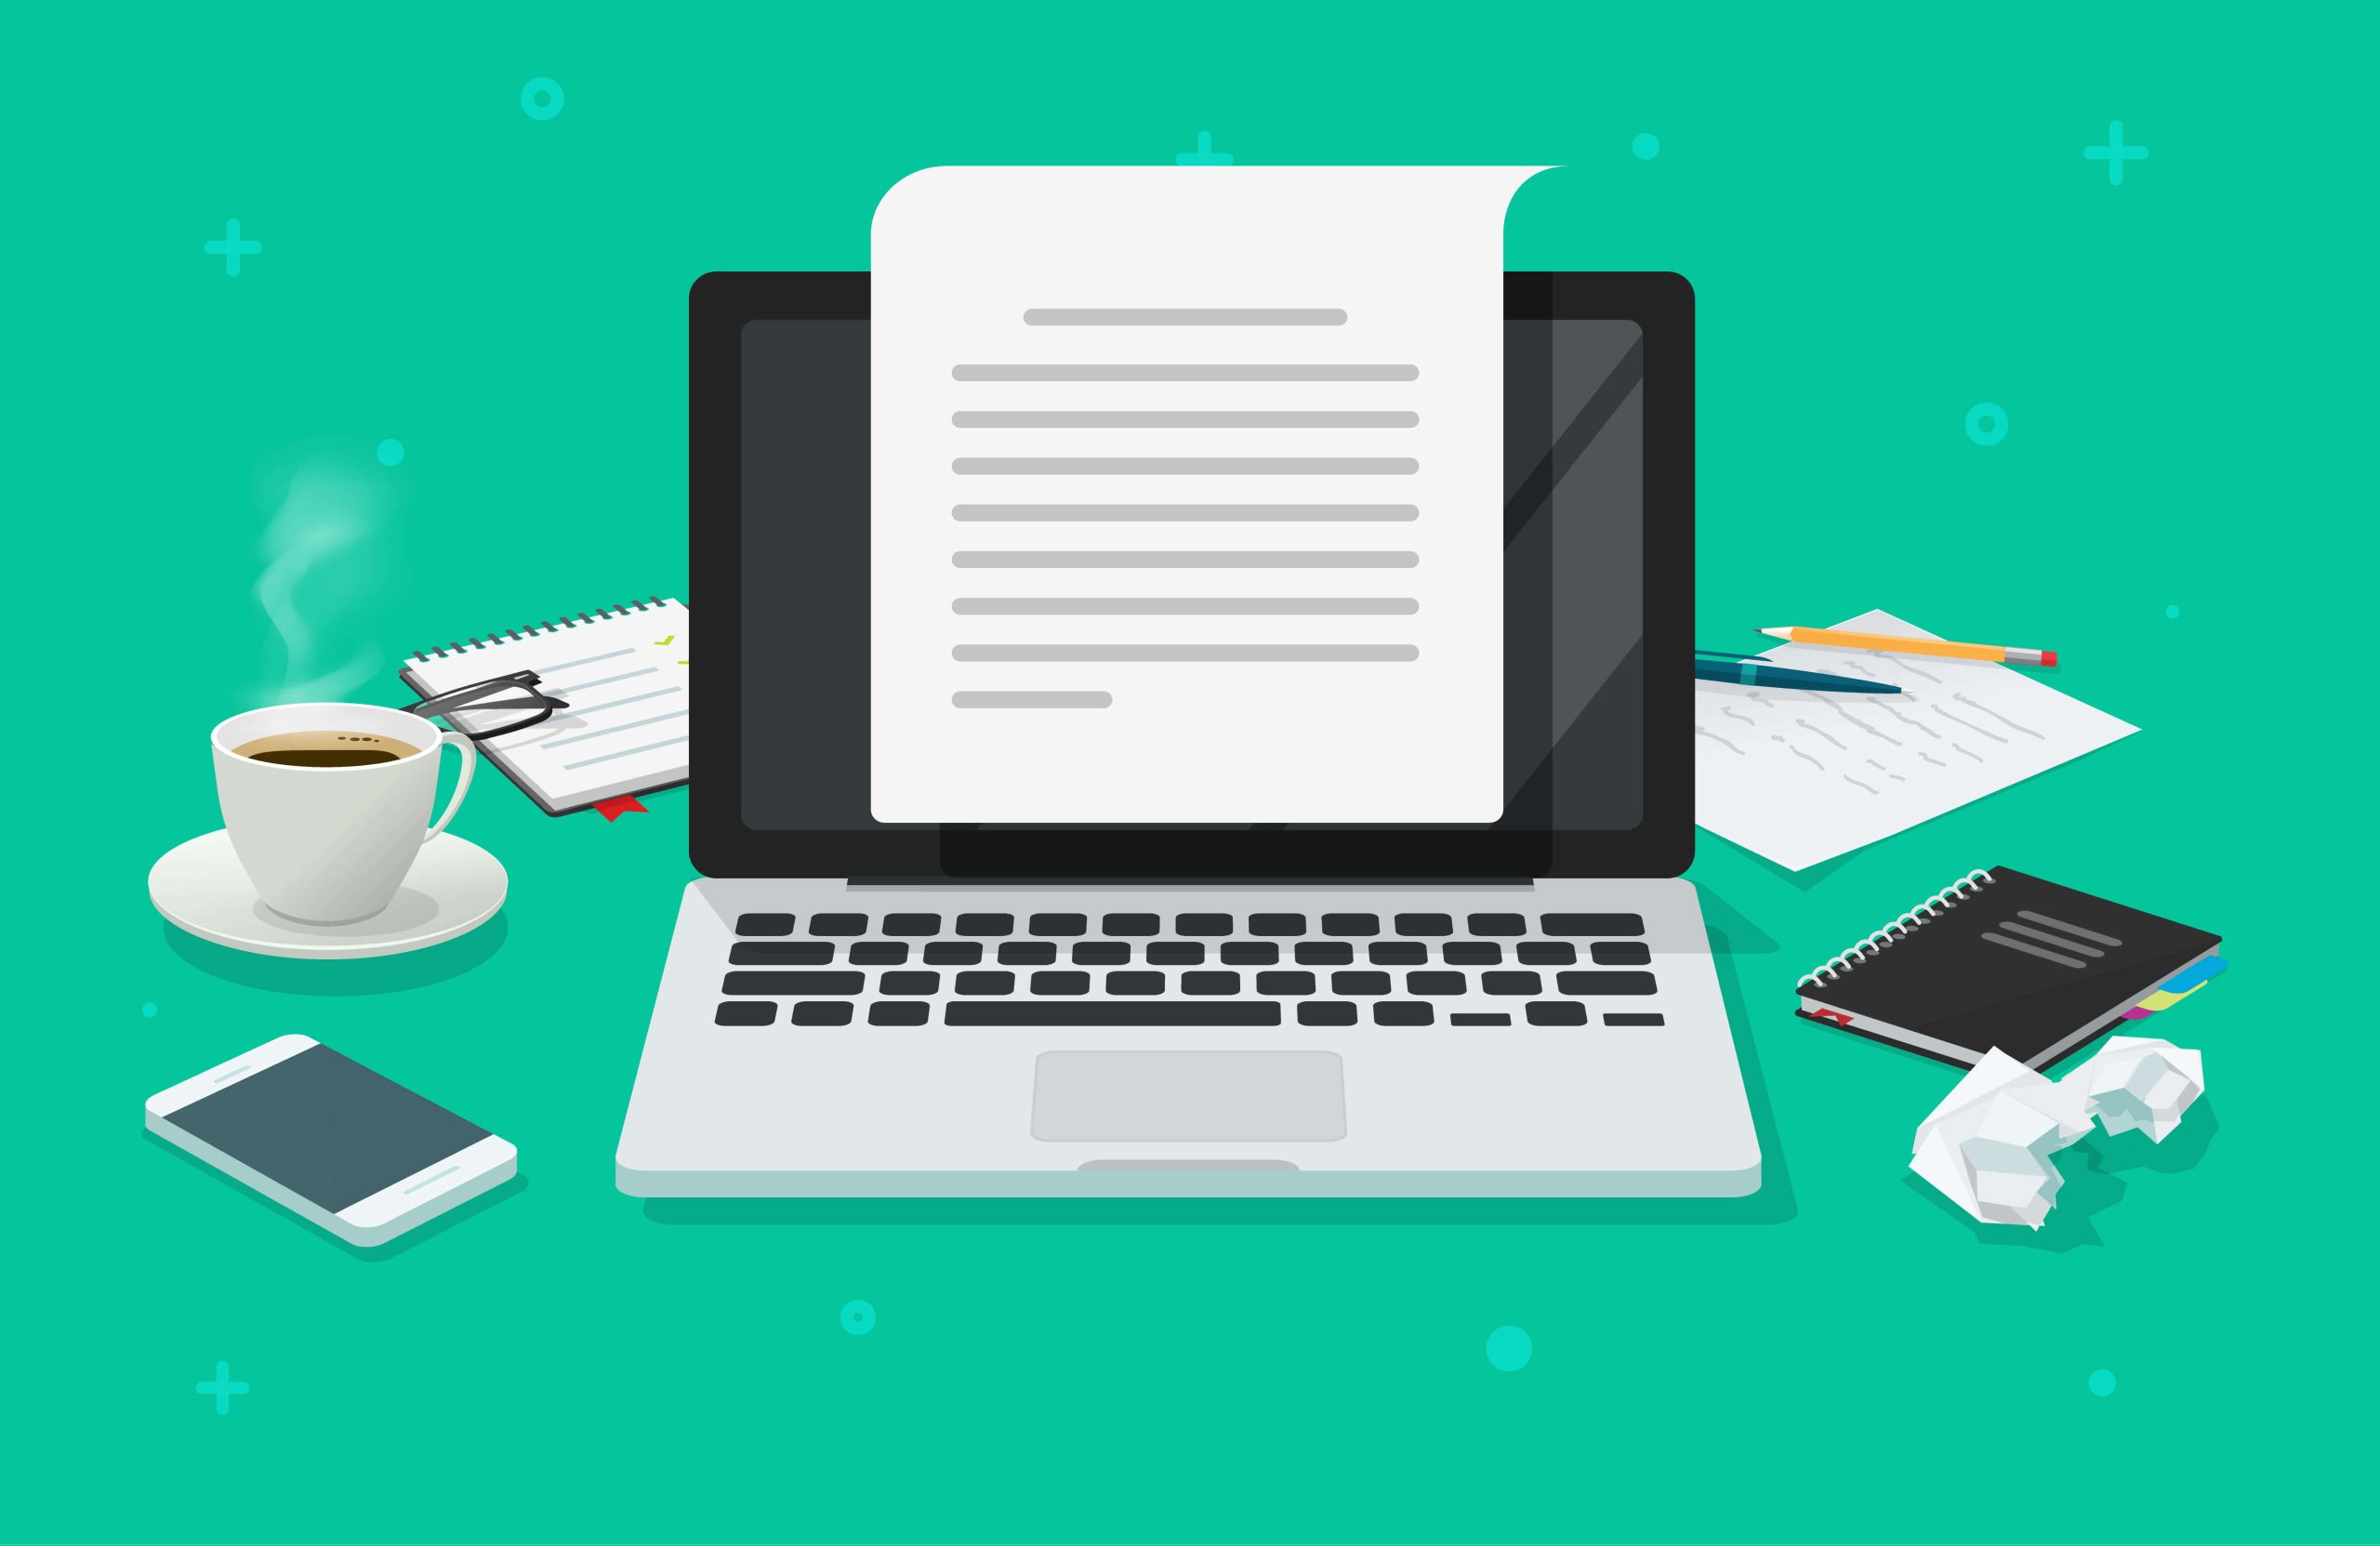 illustrazione del concetto di web content editor con scrivania con su appoggiato un laptop, smartphone, tazza di caffè e fogli